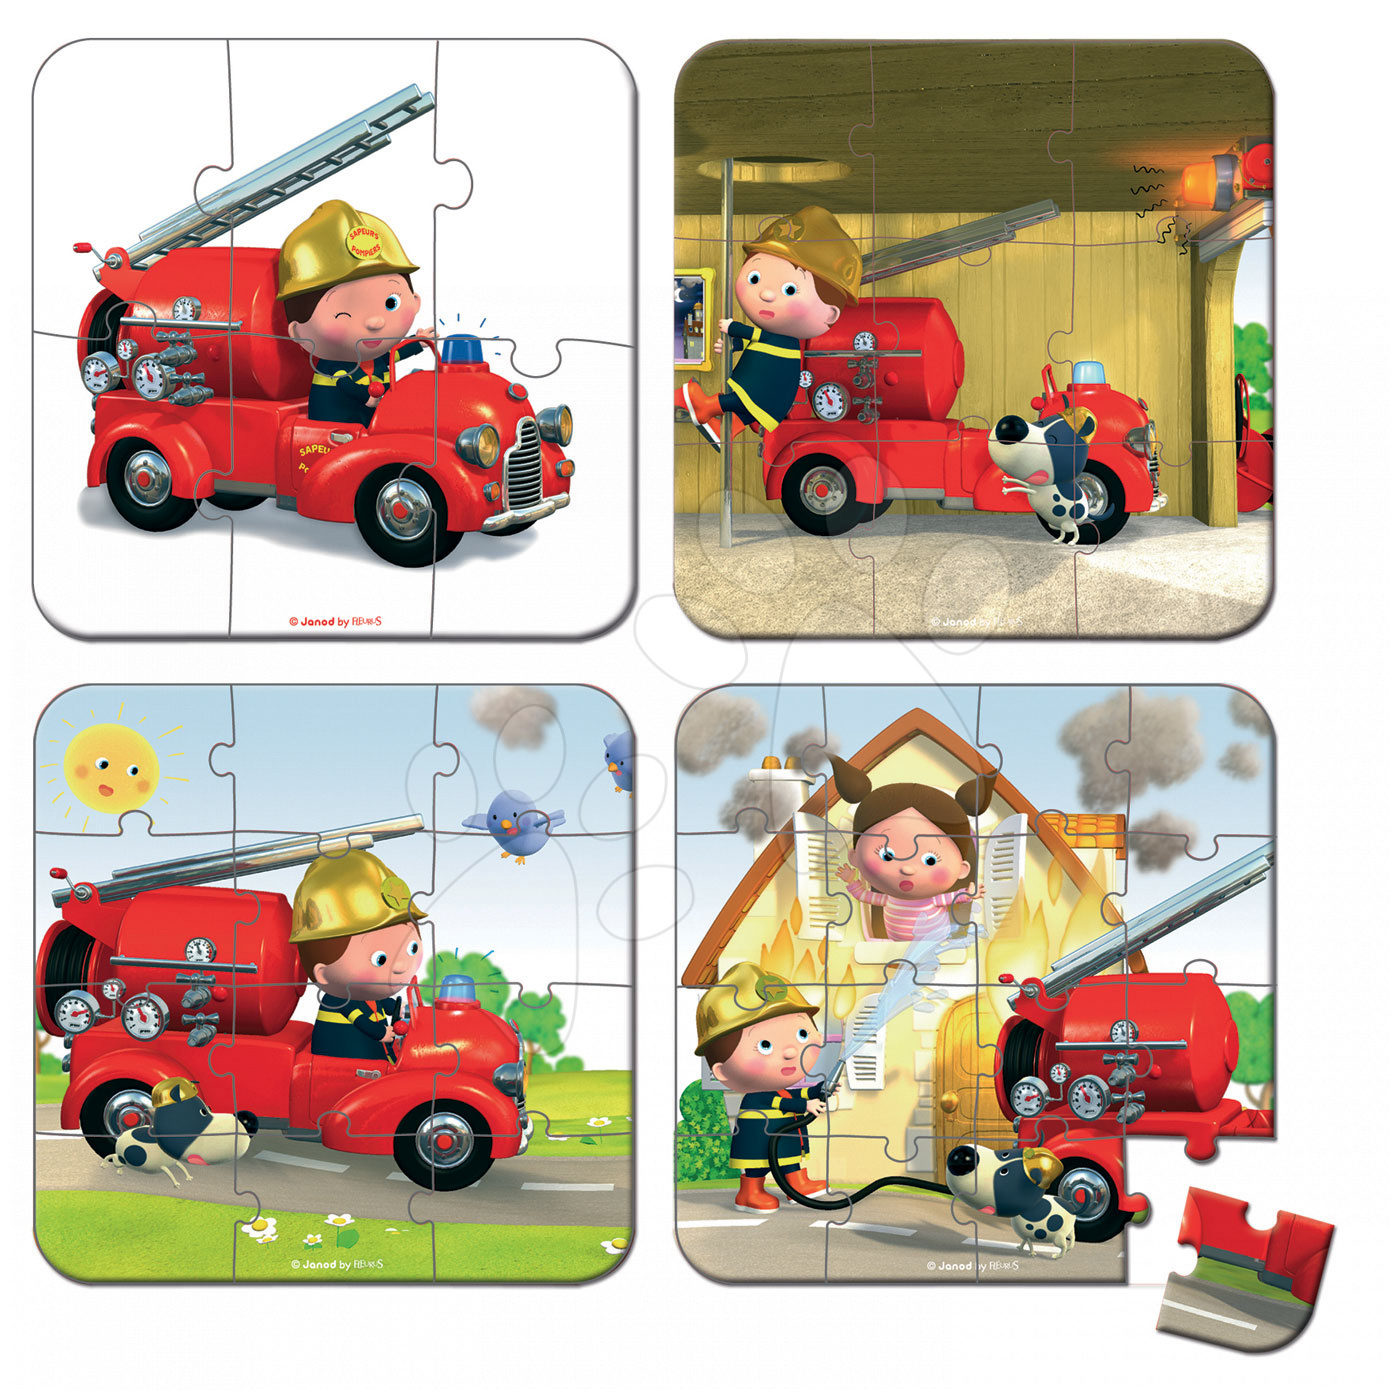 Пазл пожарный. Пазлы "пожарная машина". Пазл пожарный для детей. Пазл пожарная машина для детей. Пазл на пожарную тематику.